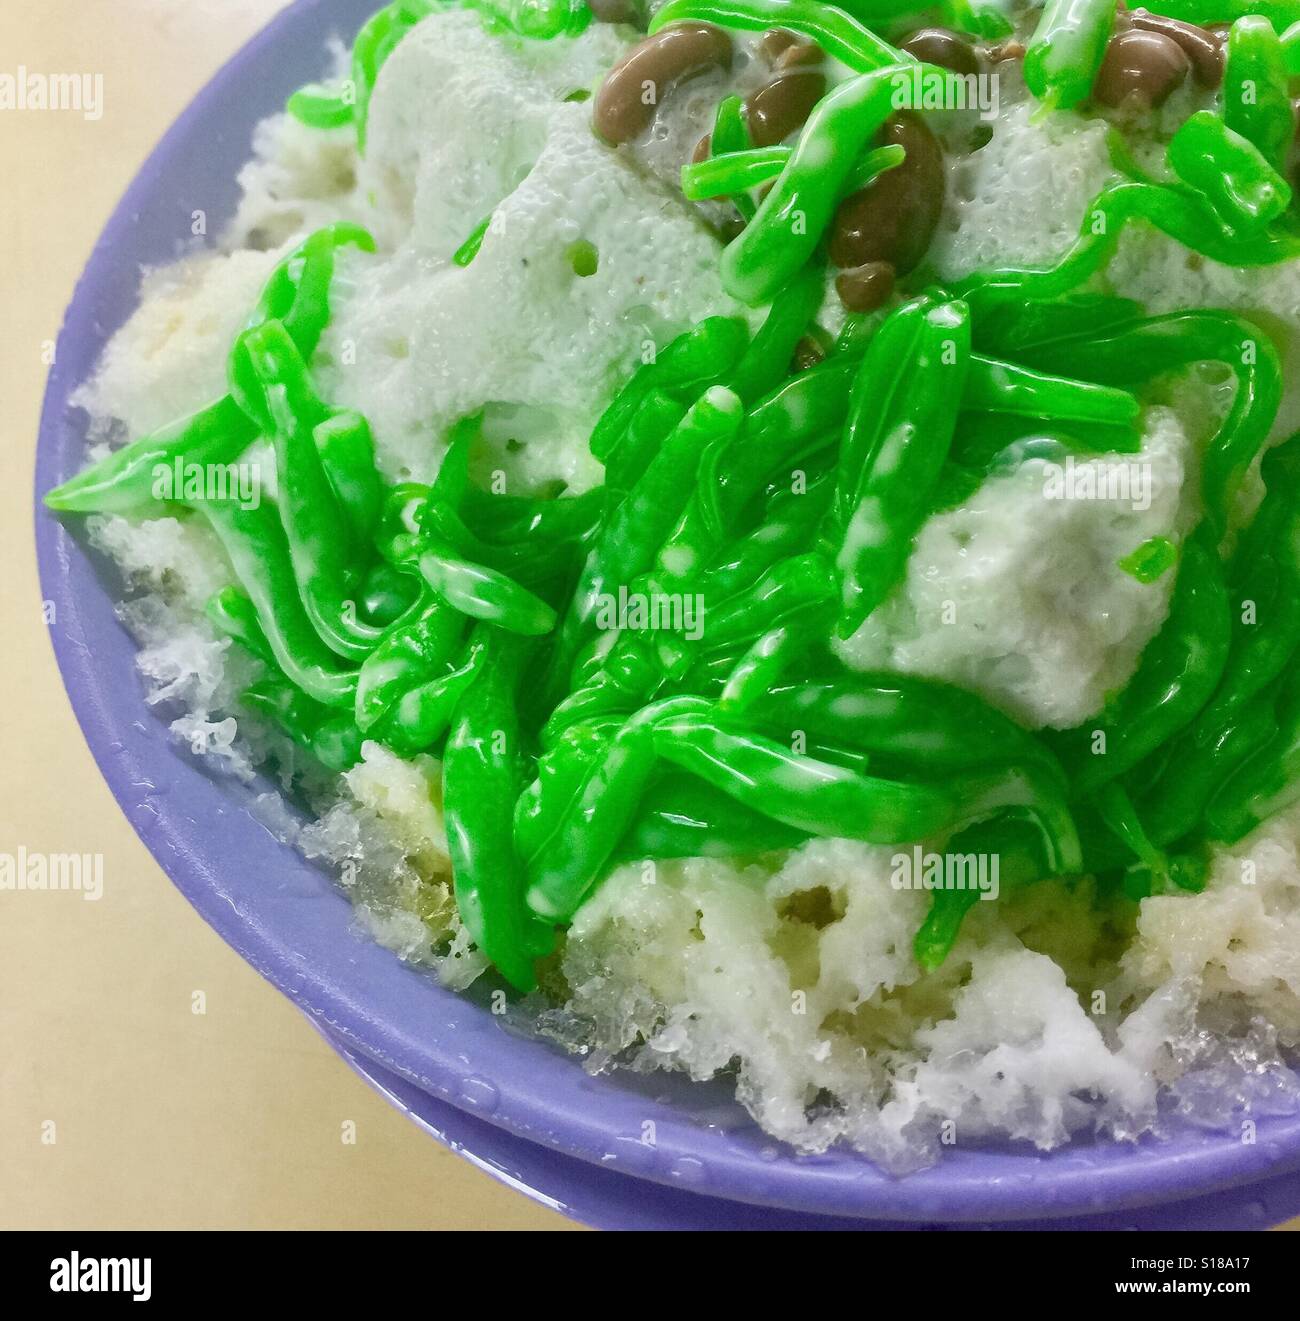 Singapore dessert, Chendol - ghiaccio rasata servita con green jelly, fagioli rossi, Palm lo zucchero e il latte di cocco Foto Stock